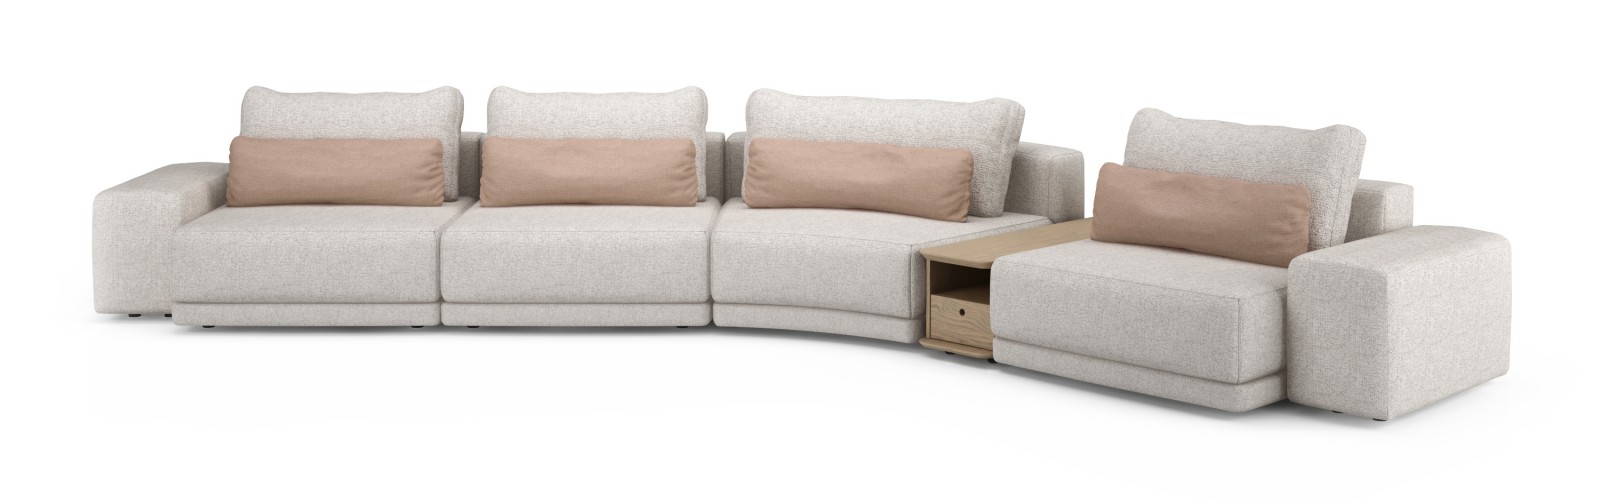 206" Modular Sofa